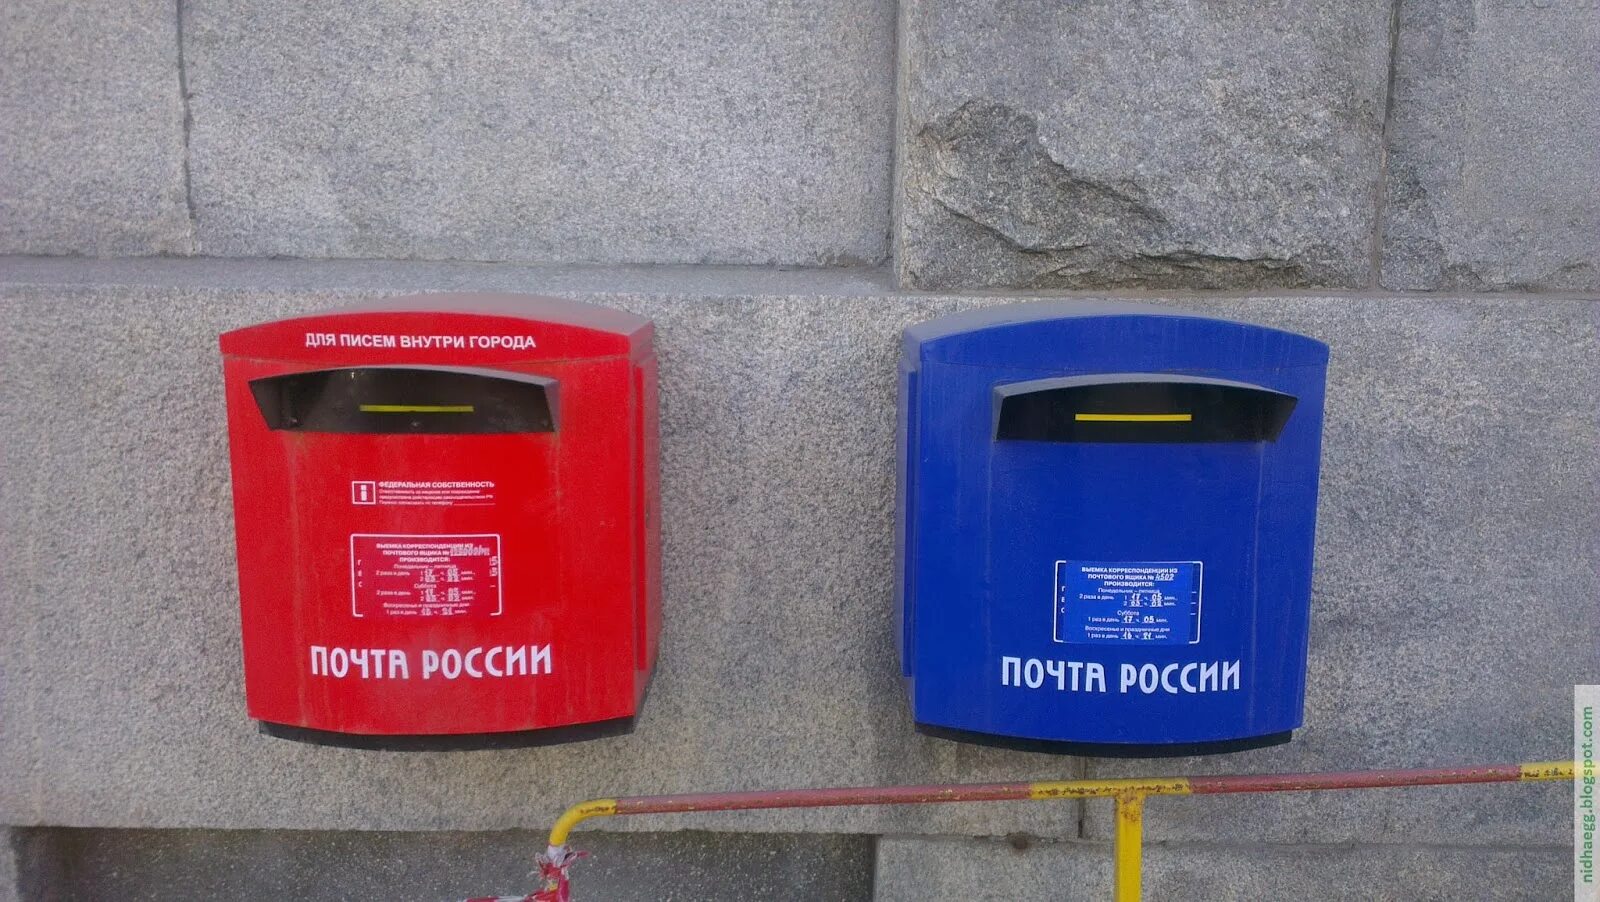 Компания почтового ящика. Почтовый ящик. Современный почтовый ящик. Почтовый ящик на улице. Красный почтовый ящик.